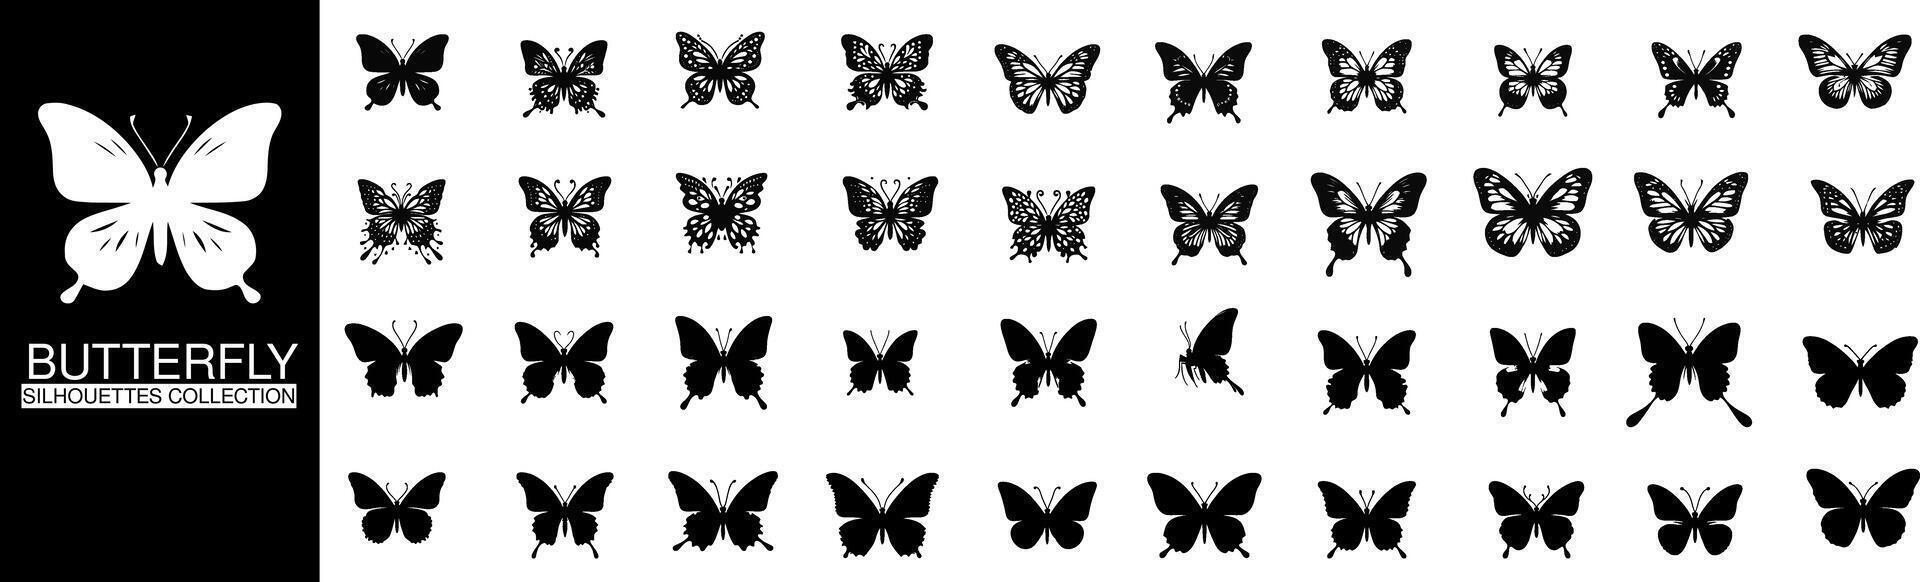 mariposa silueta recopilación, exhibiendo el delicado belleza de varios especies en minimalista diseños vector